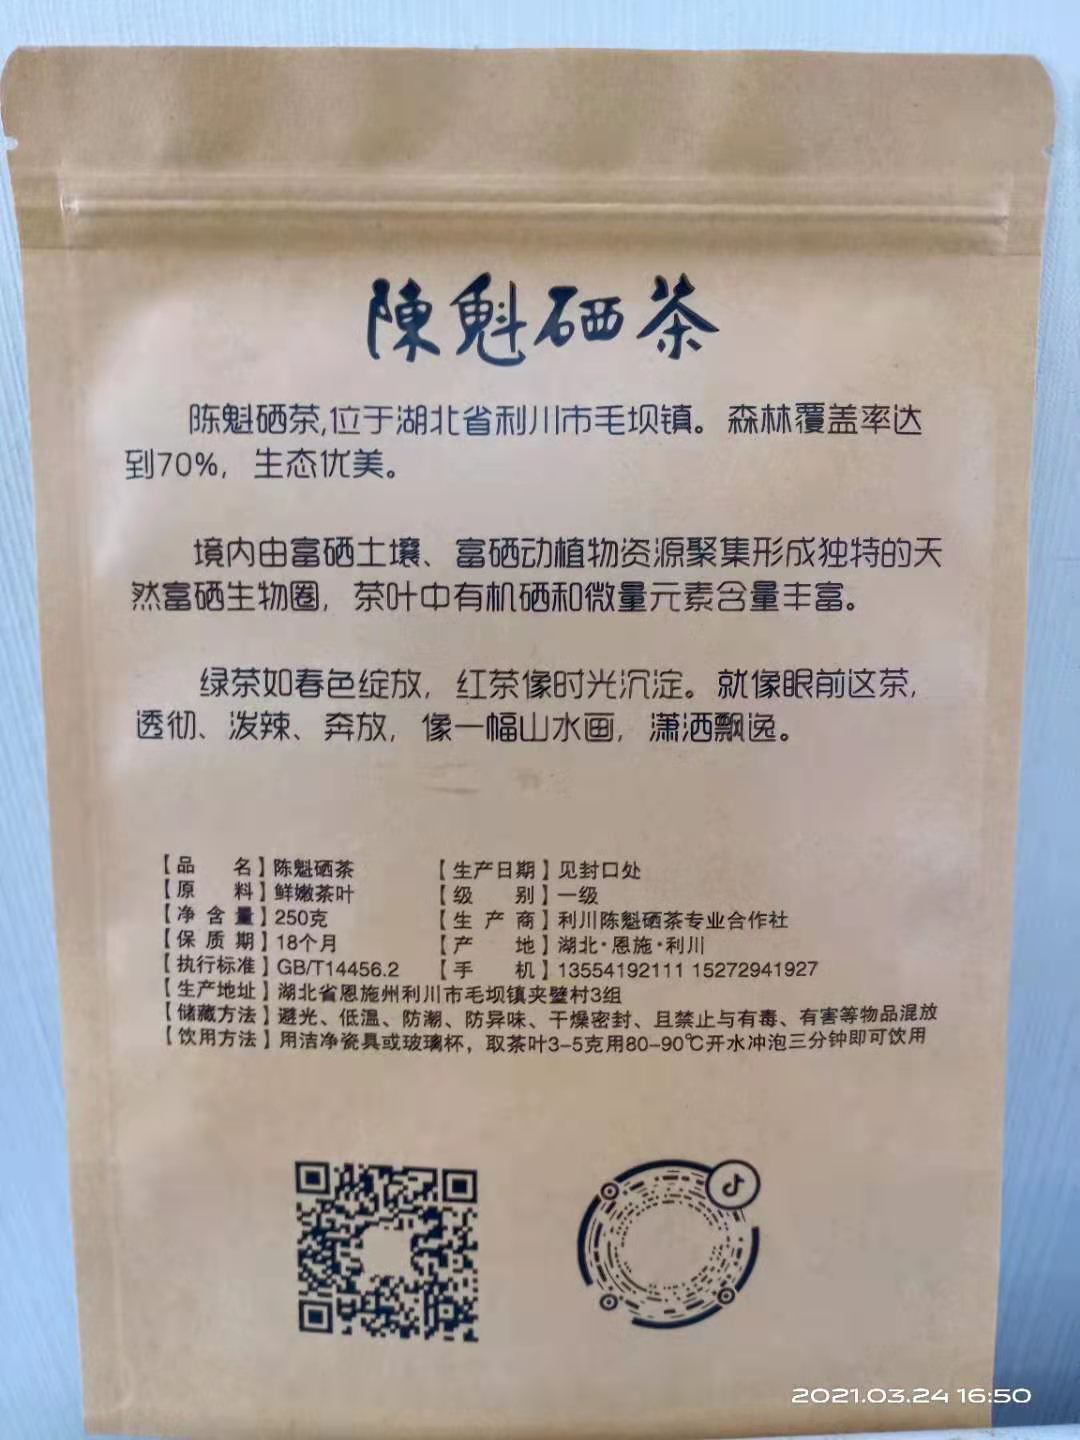 安徽荔枝红茶批发,小种红茶批发厂家